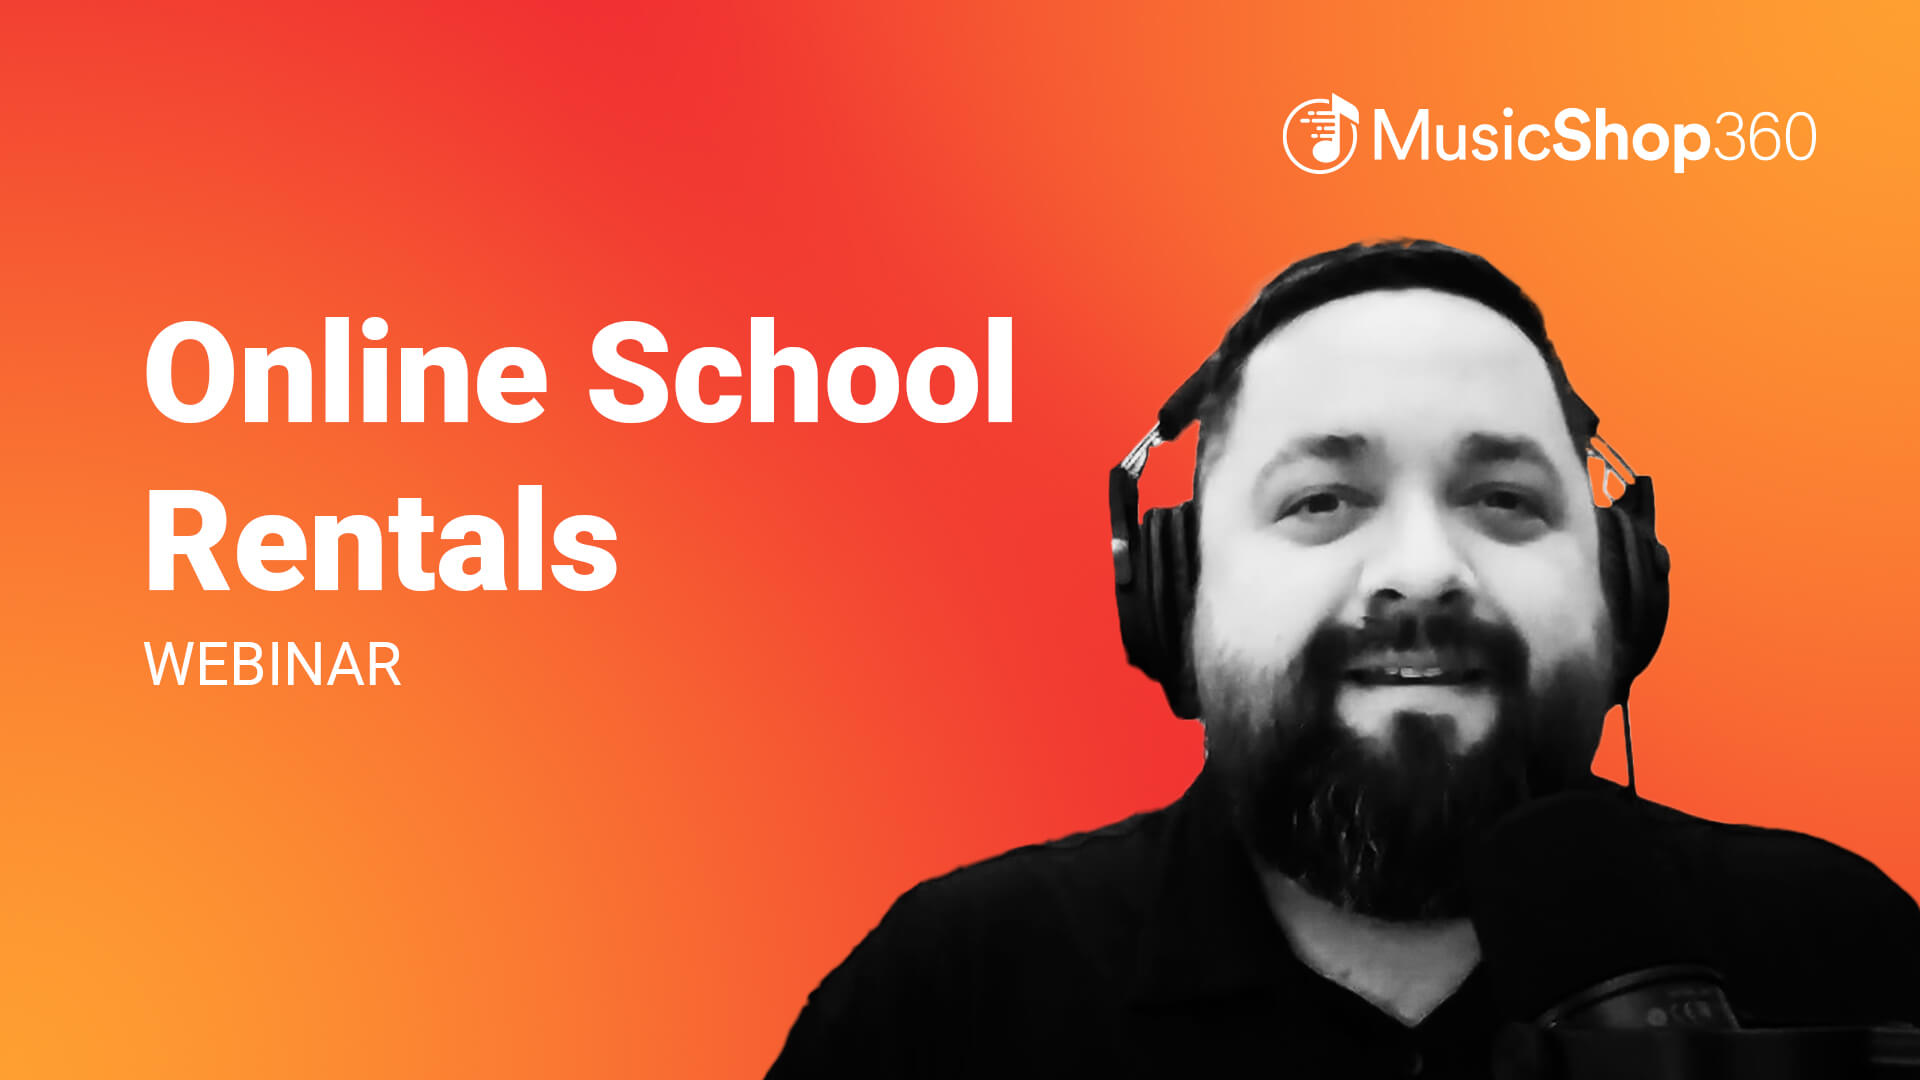 Online School Rentals Webinar - Music Shop 360